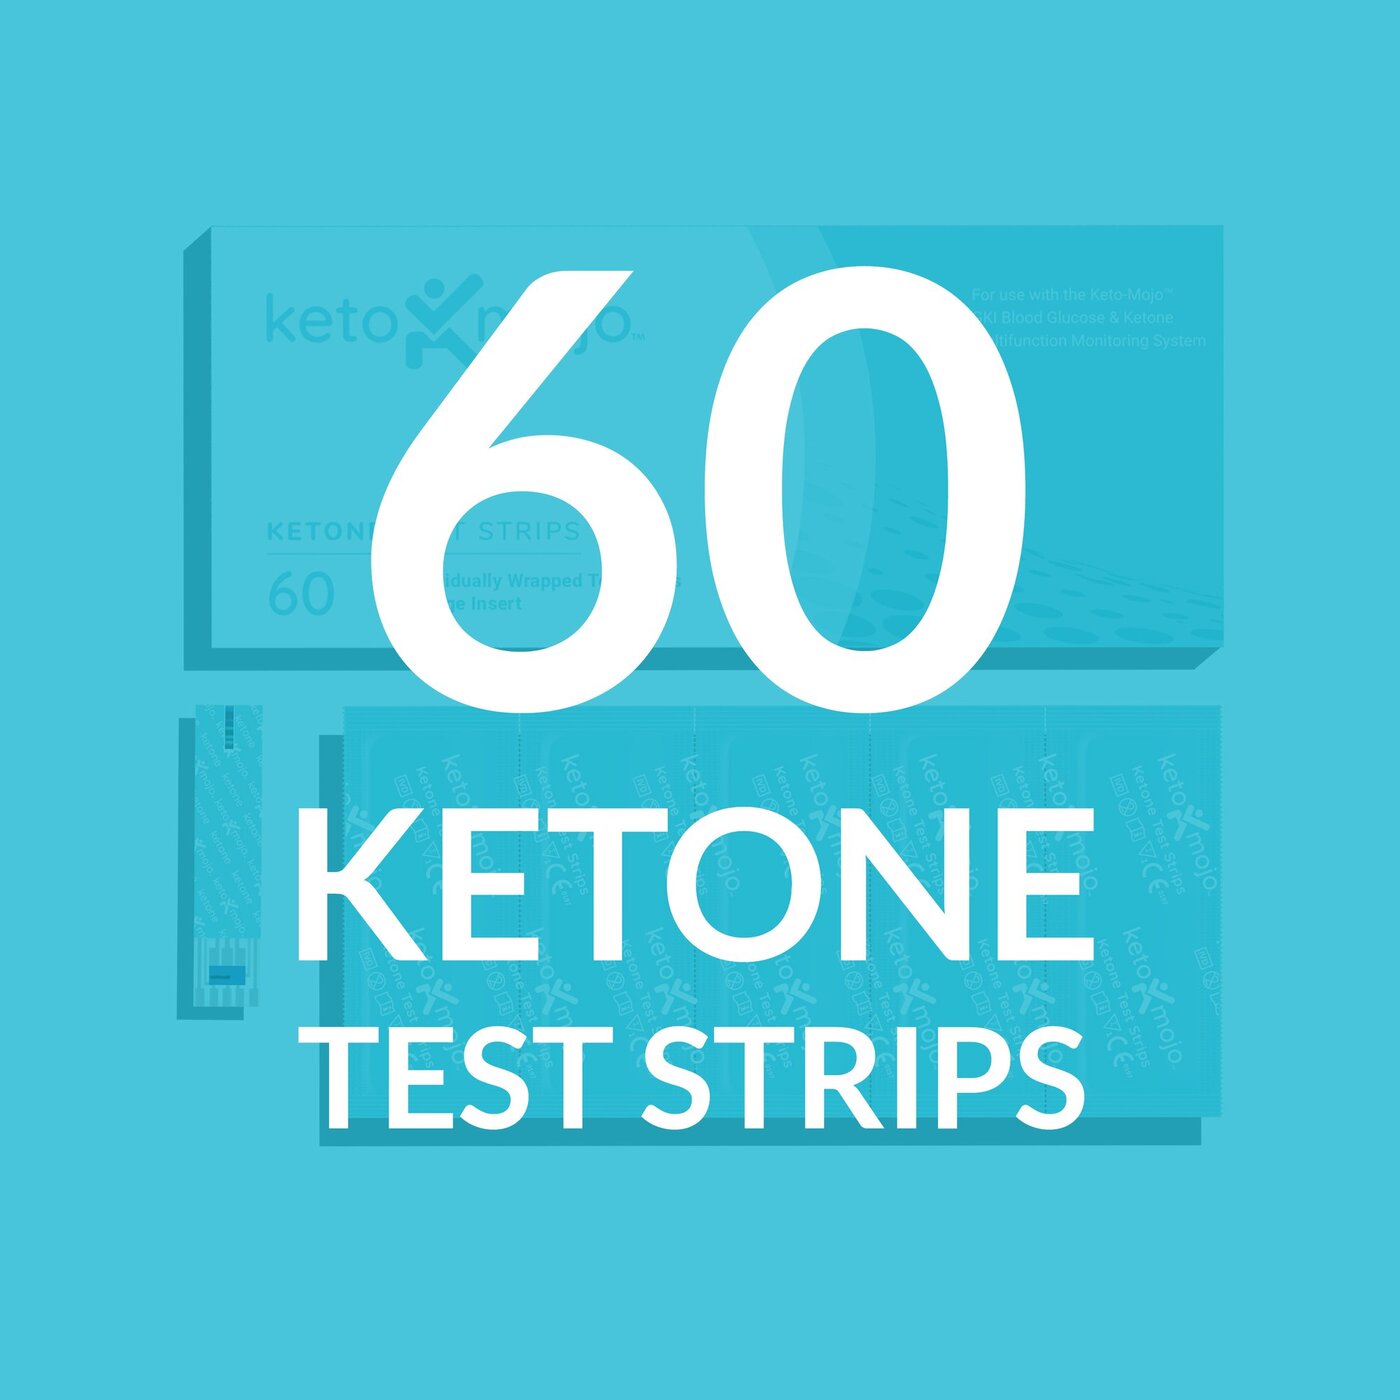 KETO MOJO™ - GKI - BLOOD KETONE TEST STRIPS (60'S) – D&A HEALTH